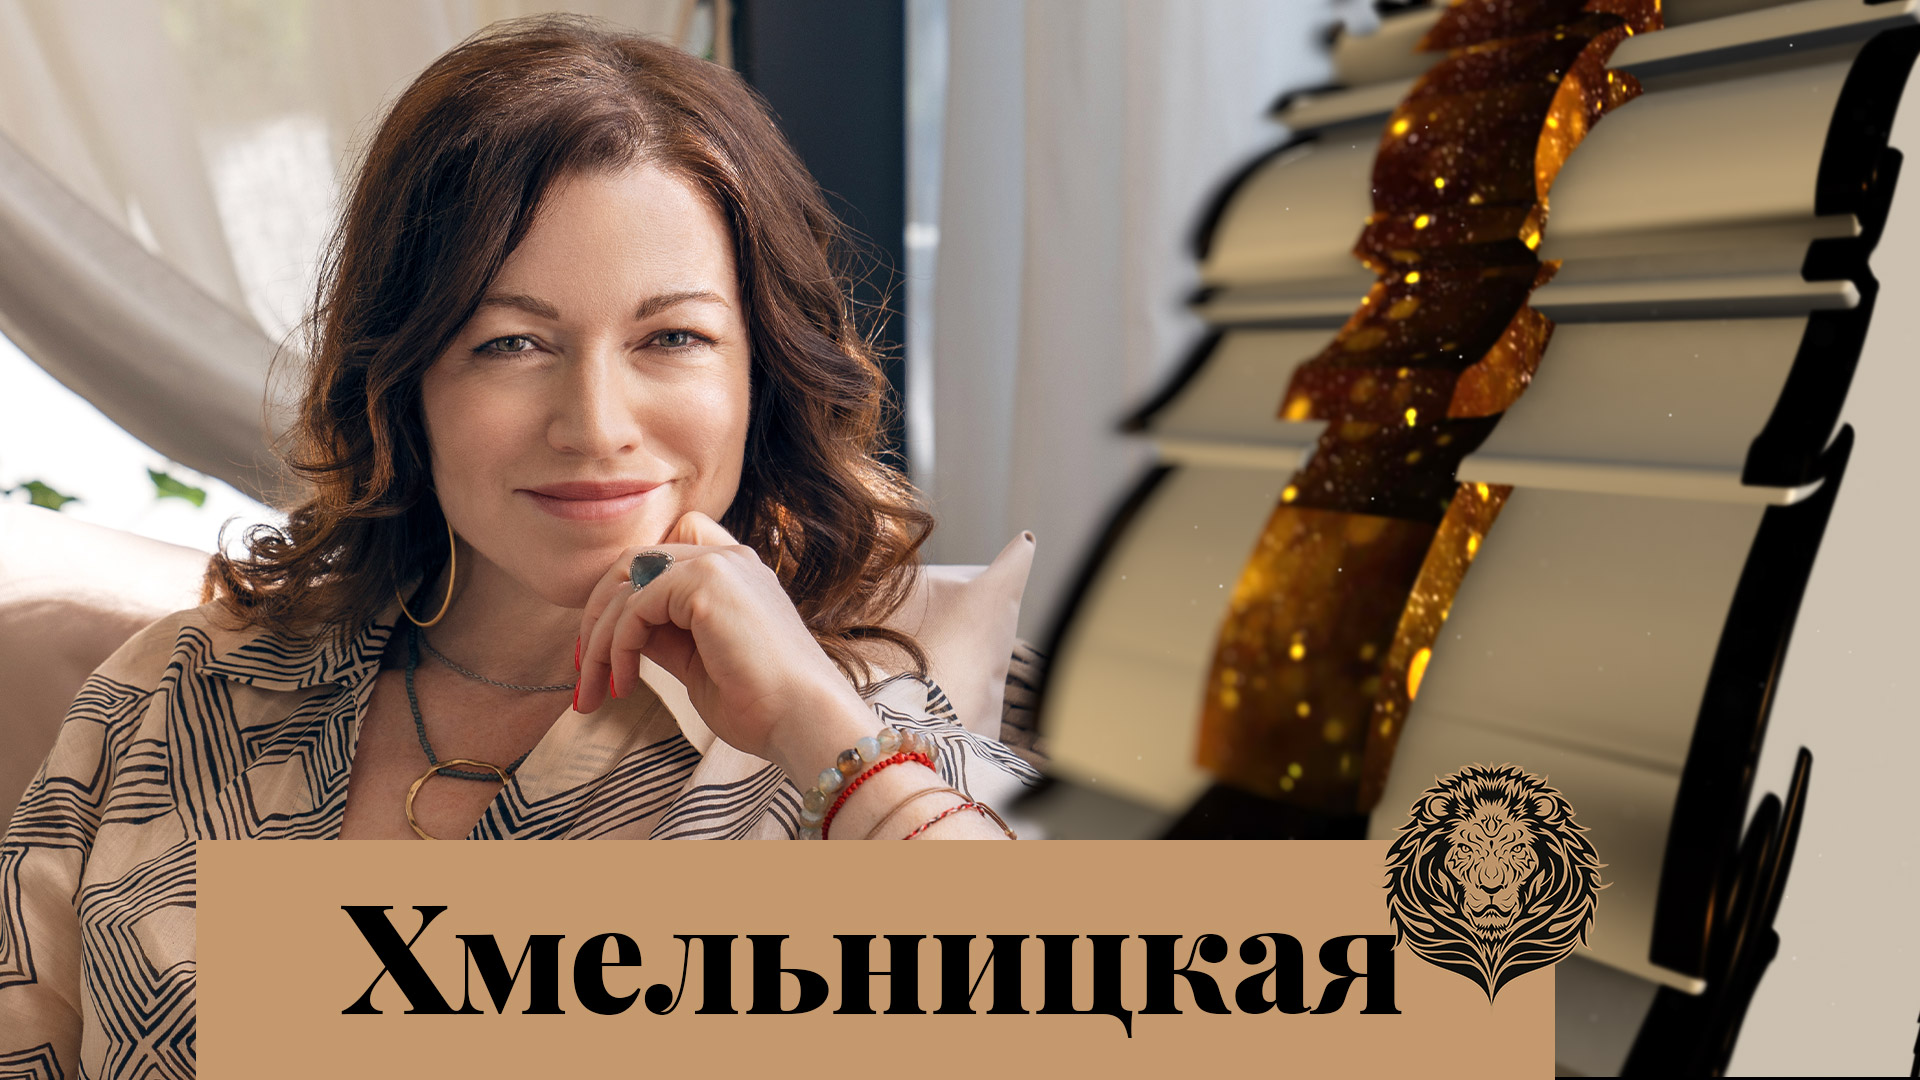 Алена Хмельницкая: Я бы с удовольствием снялась в сказке! — Интервью с обложки